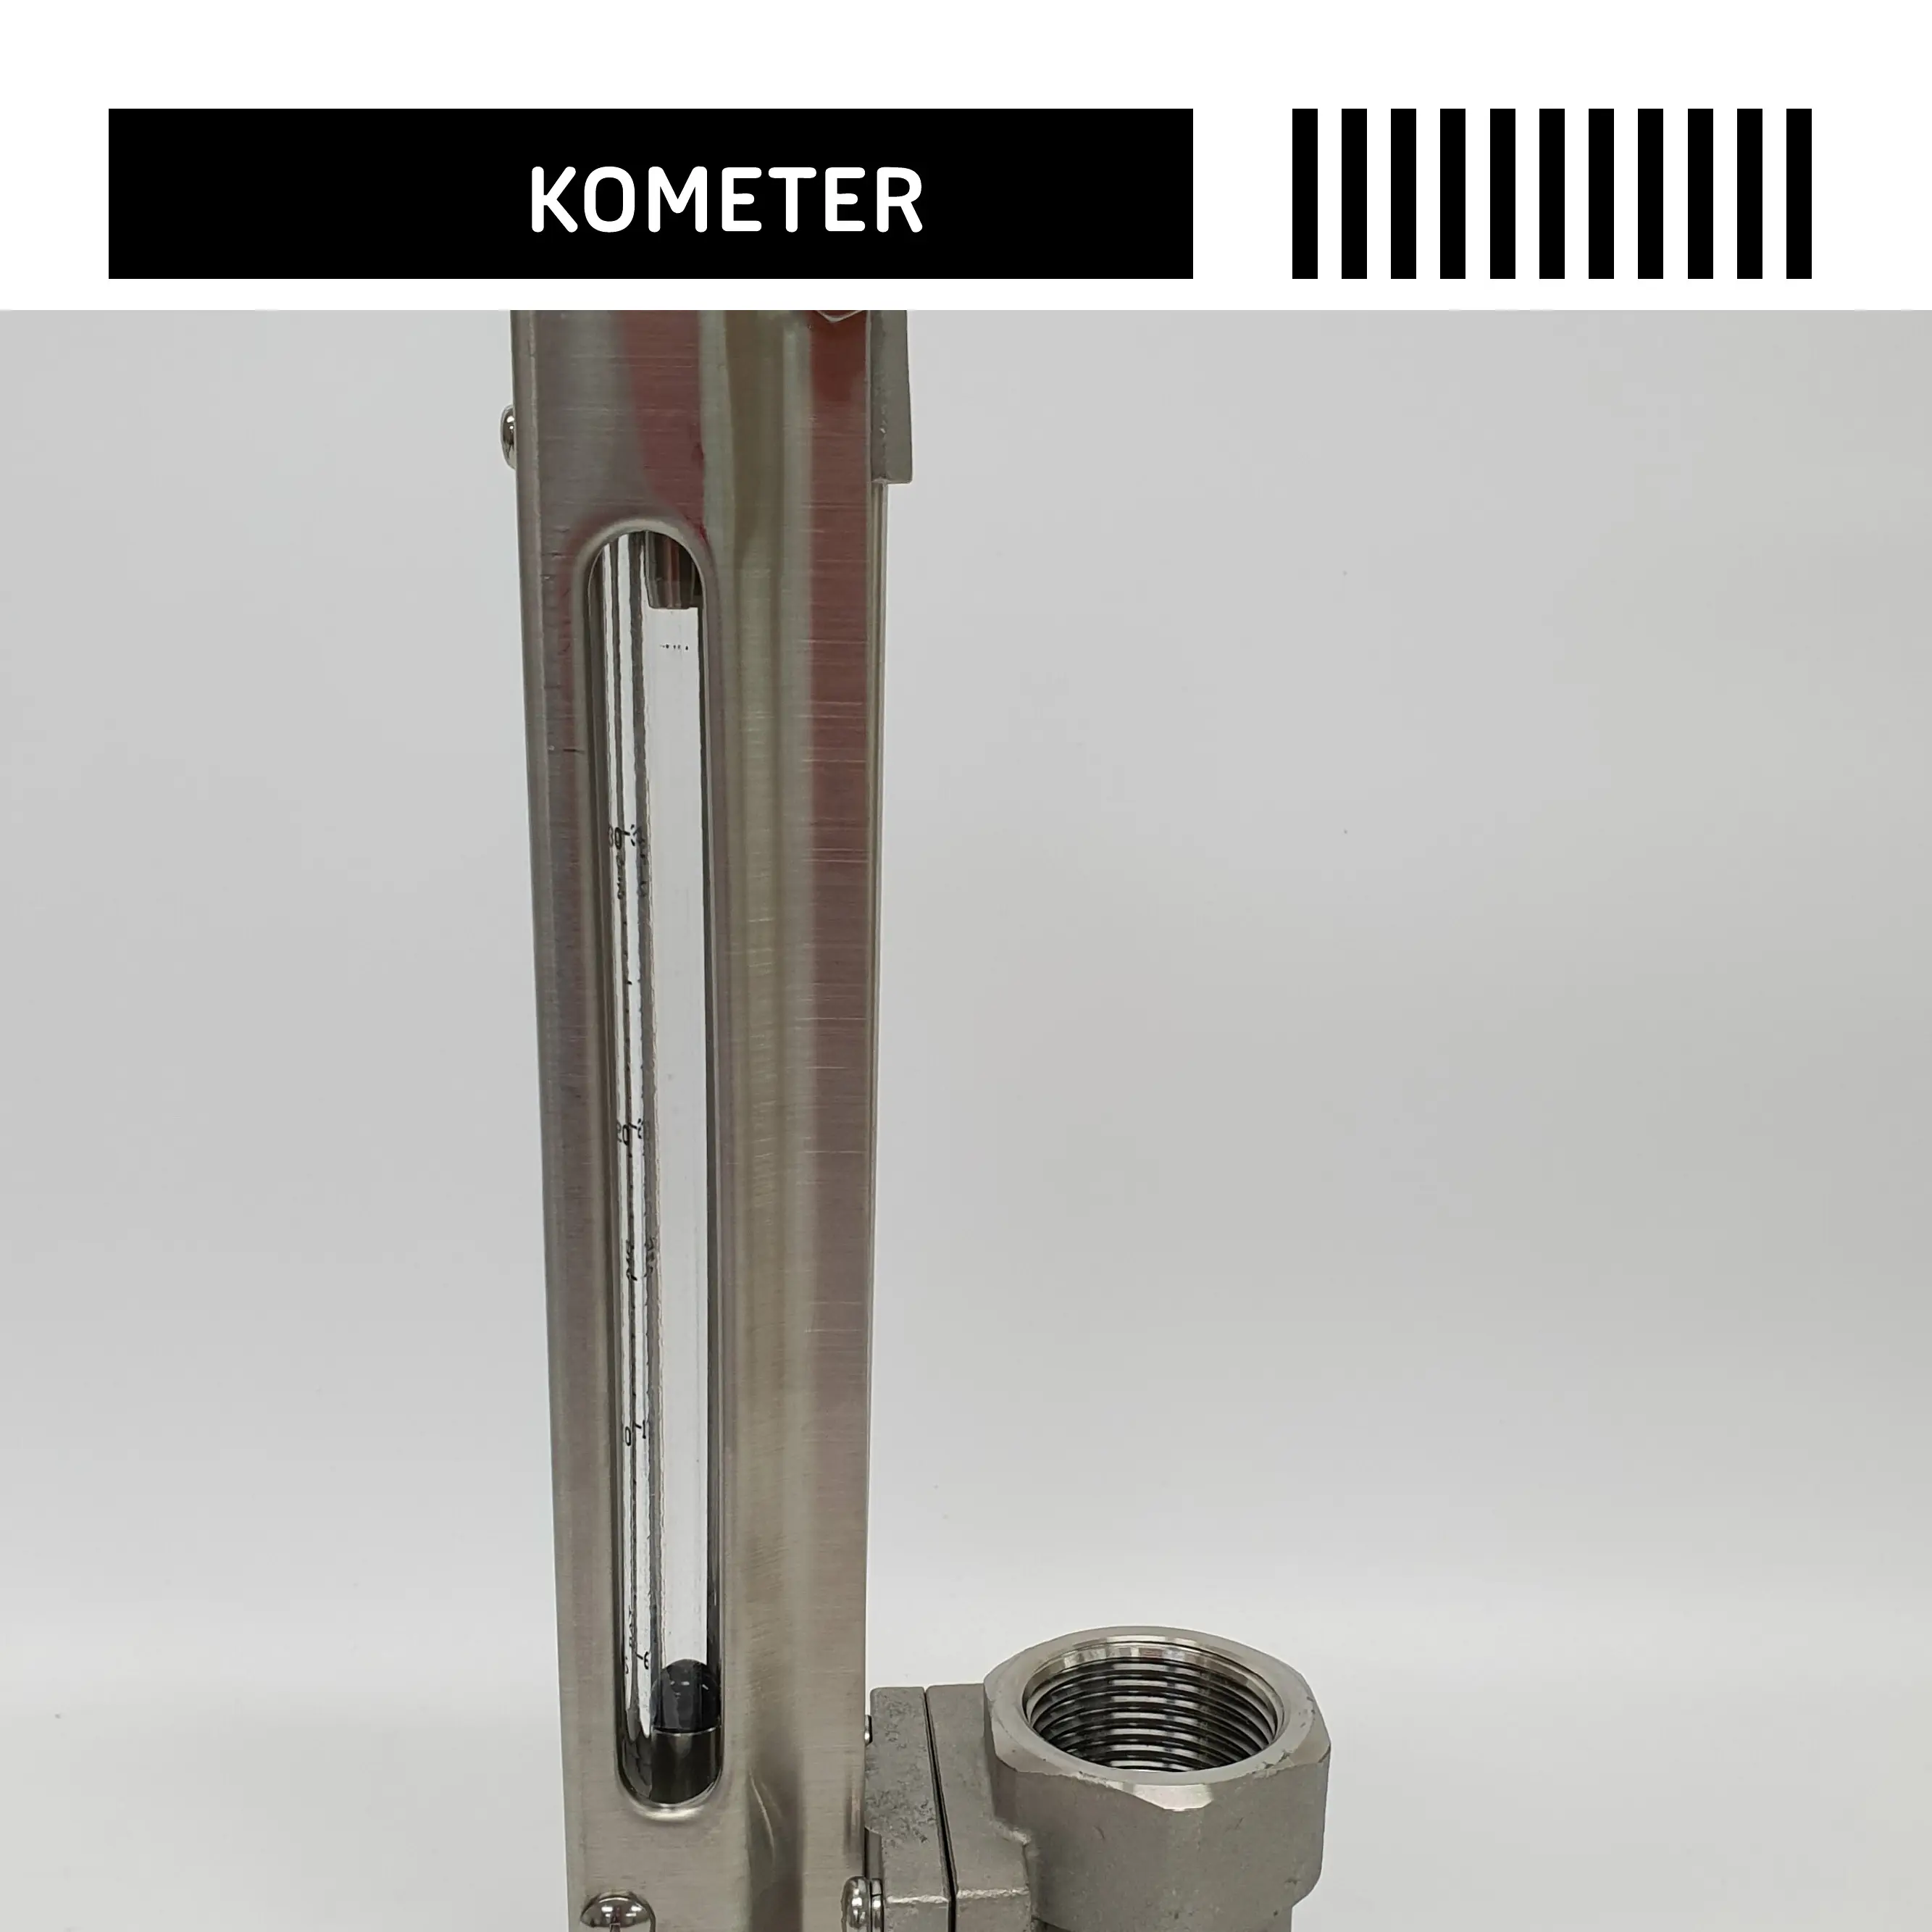 Kometer Flowmeter Model Dat Conn 1 "(F) Gemaakt In Korea